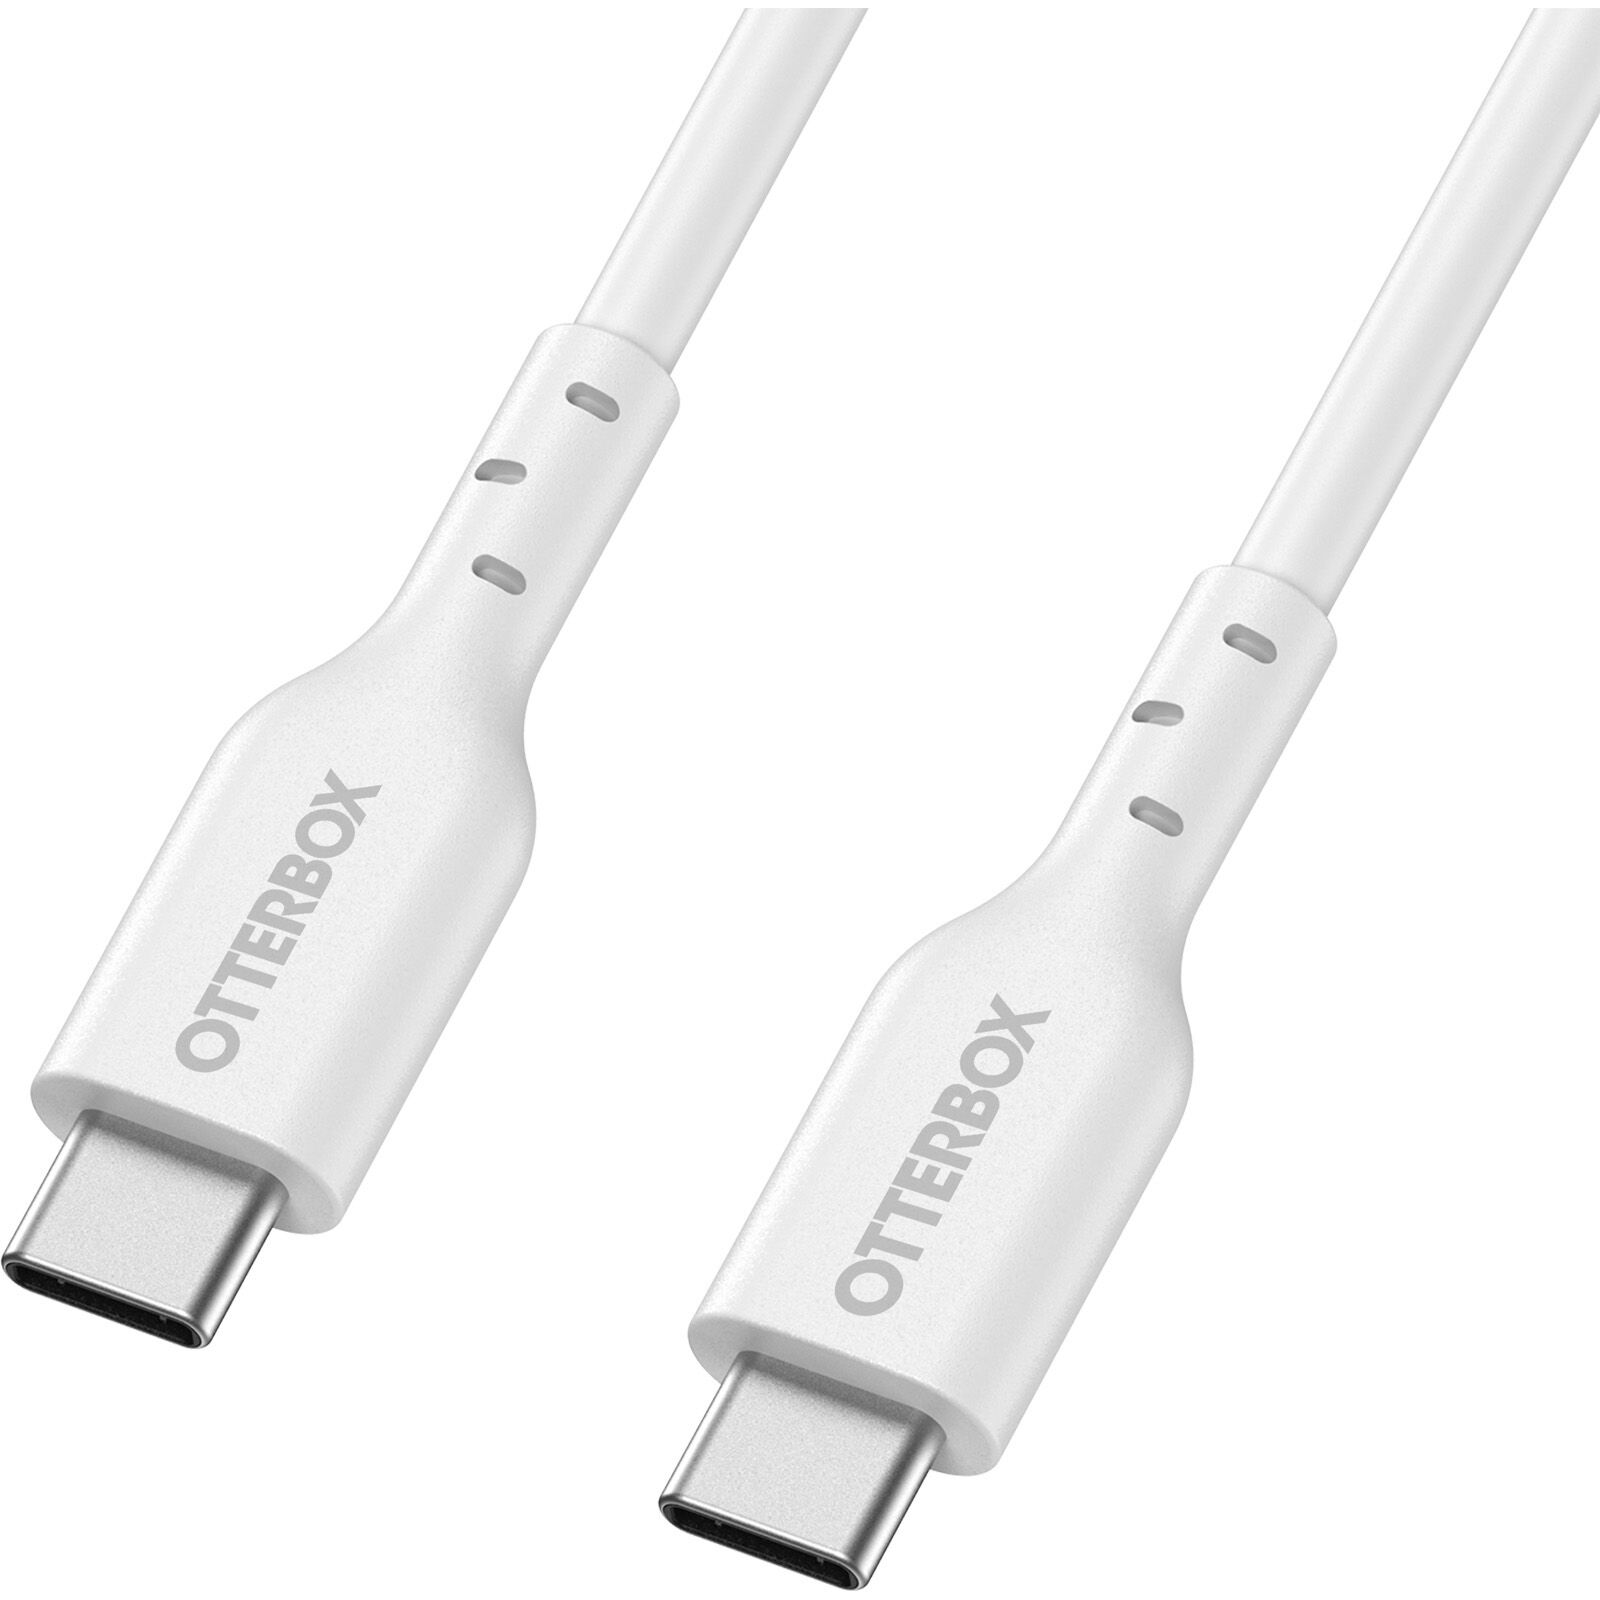 USB-C -> USB-C Kaapeli 2m Standard Fast Charge valkoinen